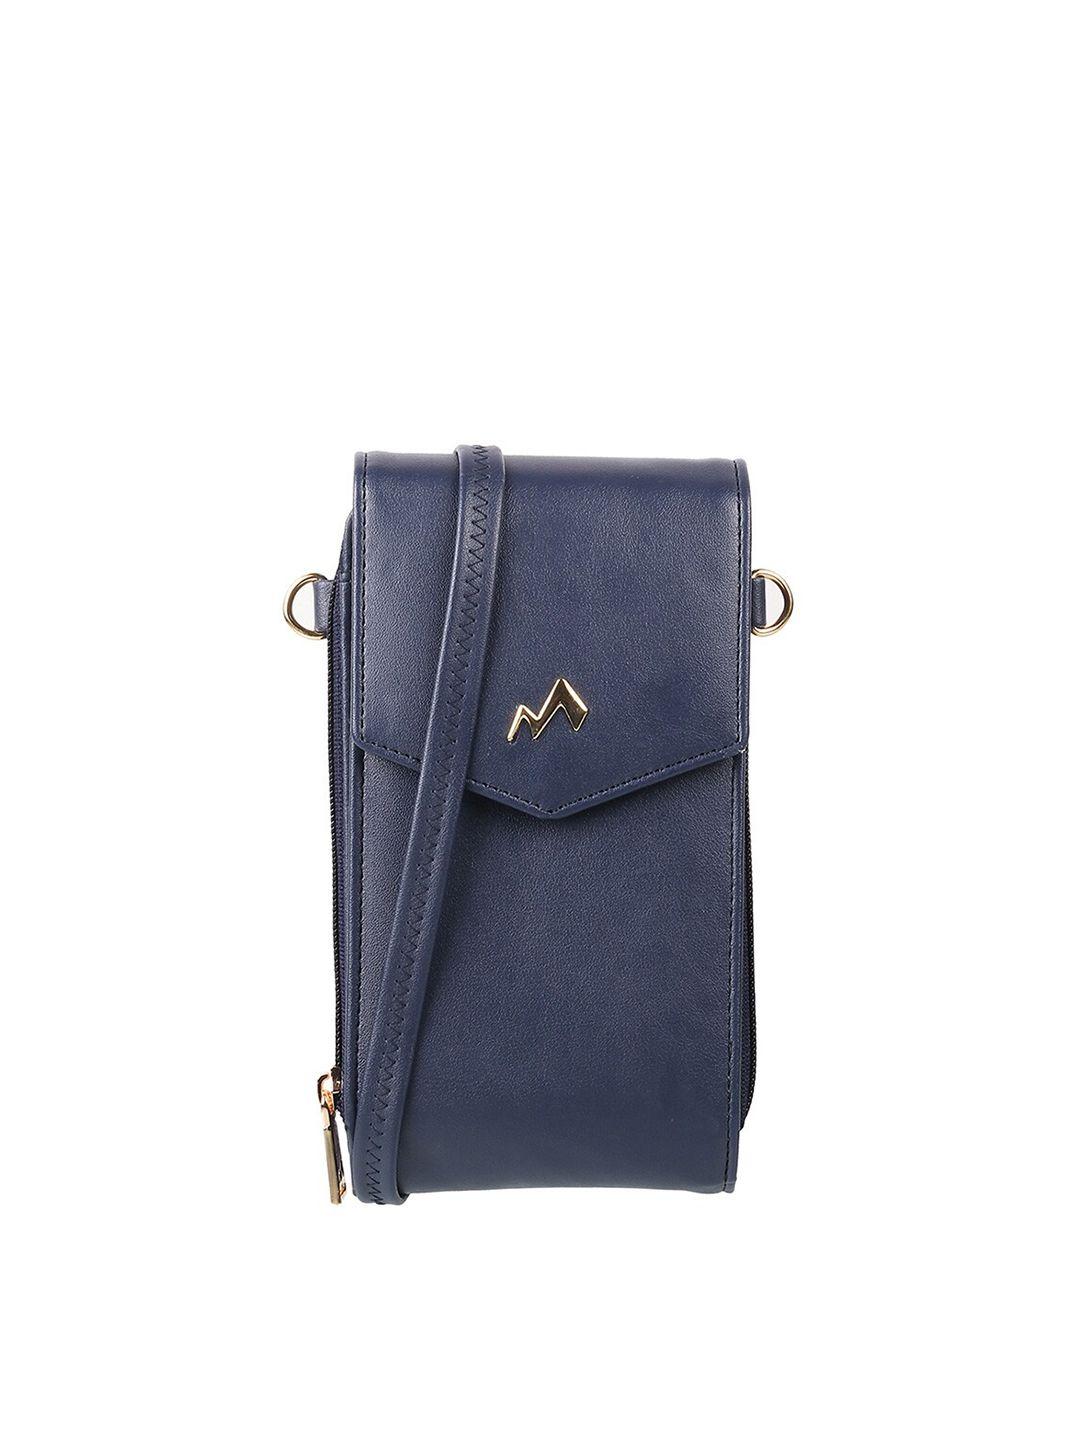 metro blue purse clutch